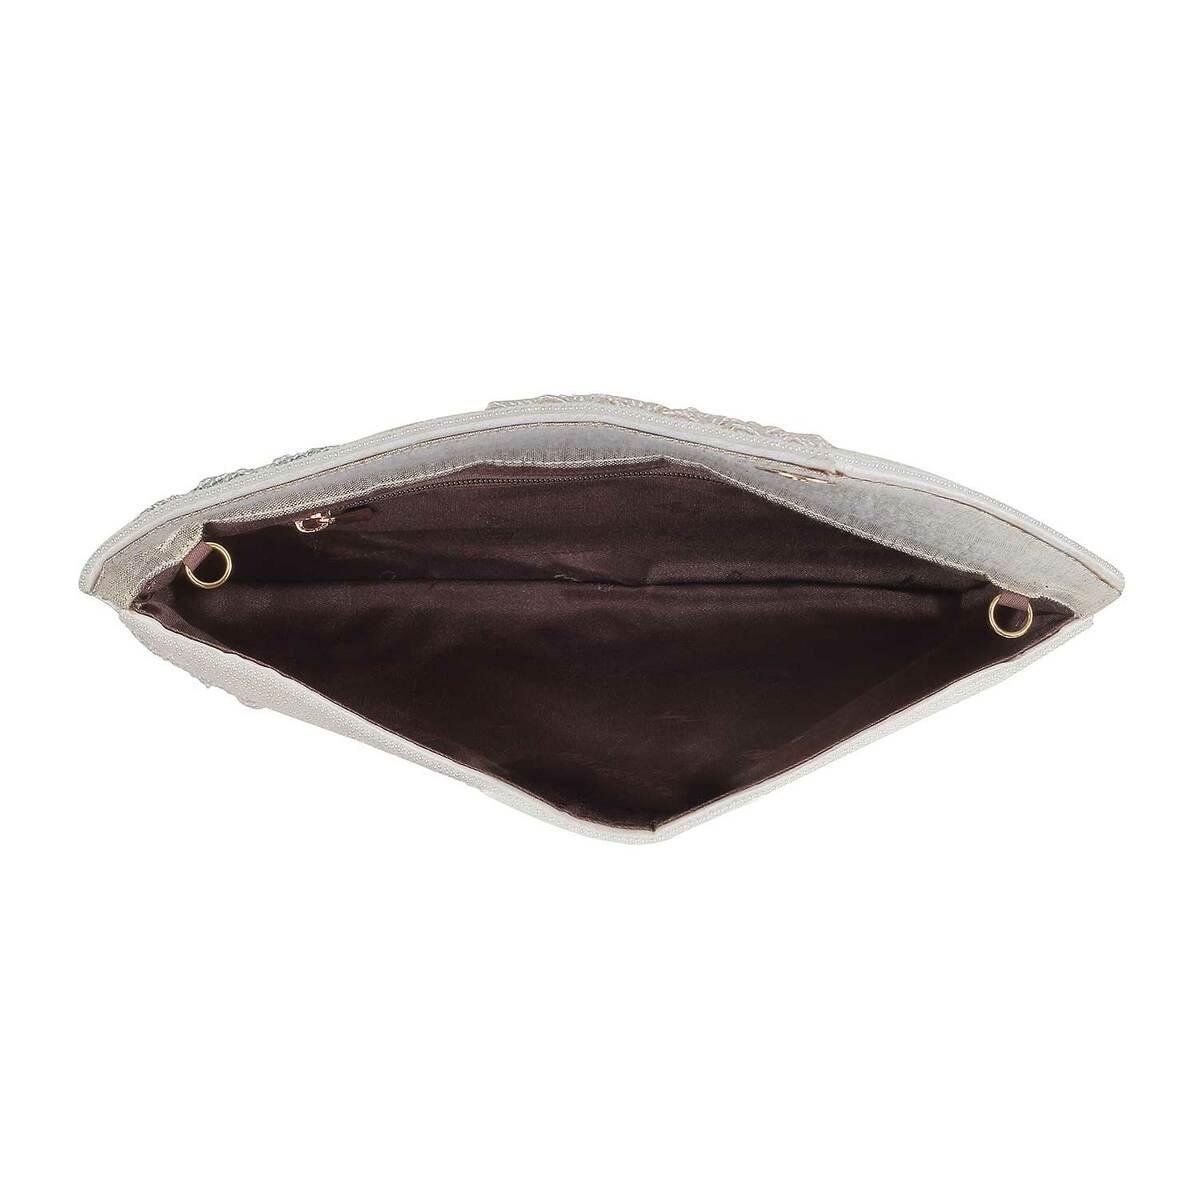 Buy Off-White Embossed Crocodile Genuine Leather Tote Bag for Women,  Satchel Purse, Shoulder Handbag, Designer Tote Bag at ShopLC.